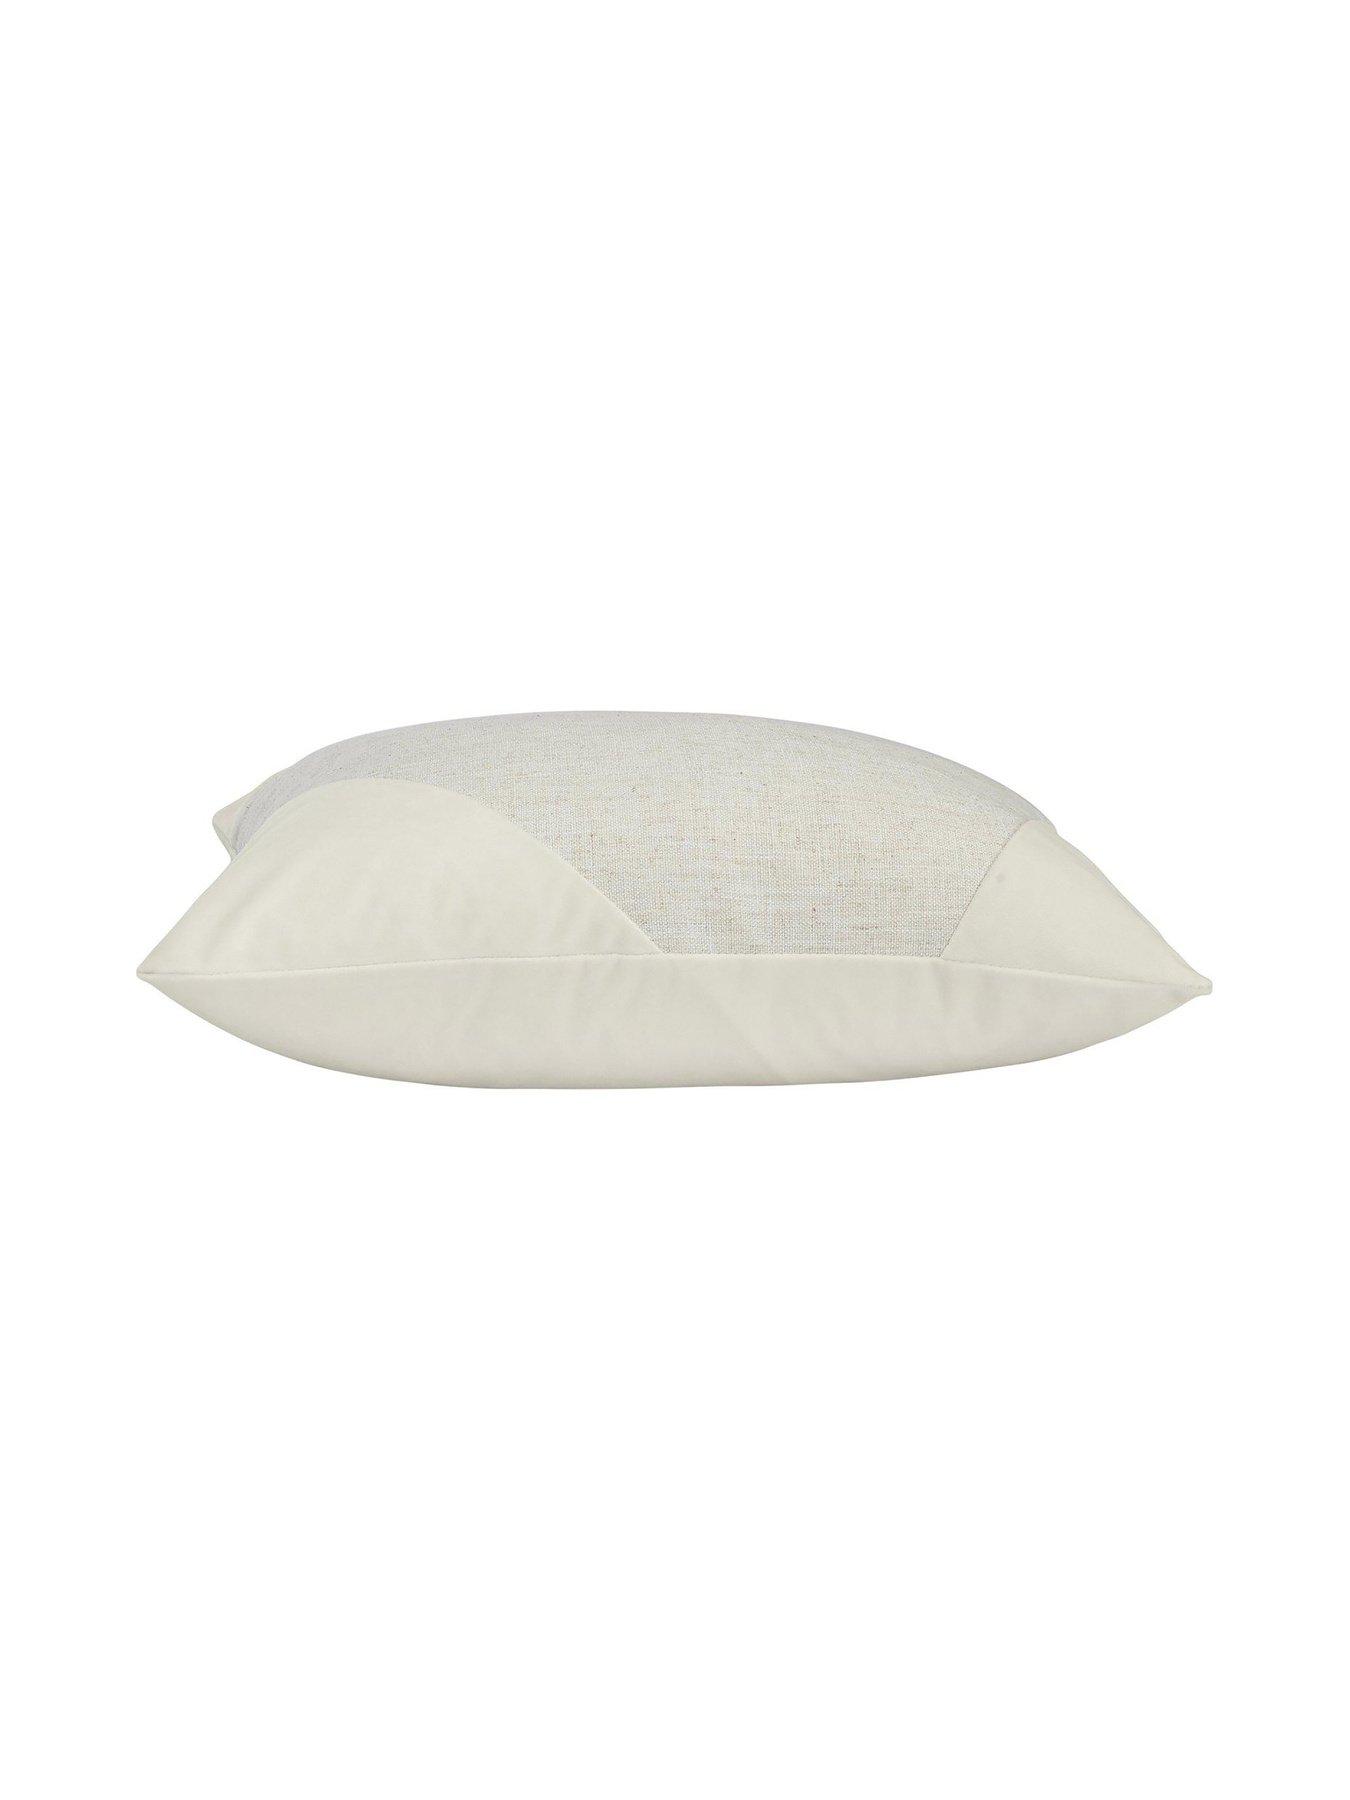 Cushion cover Inger in velvet White